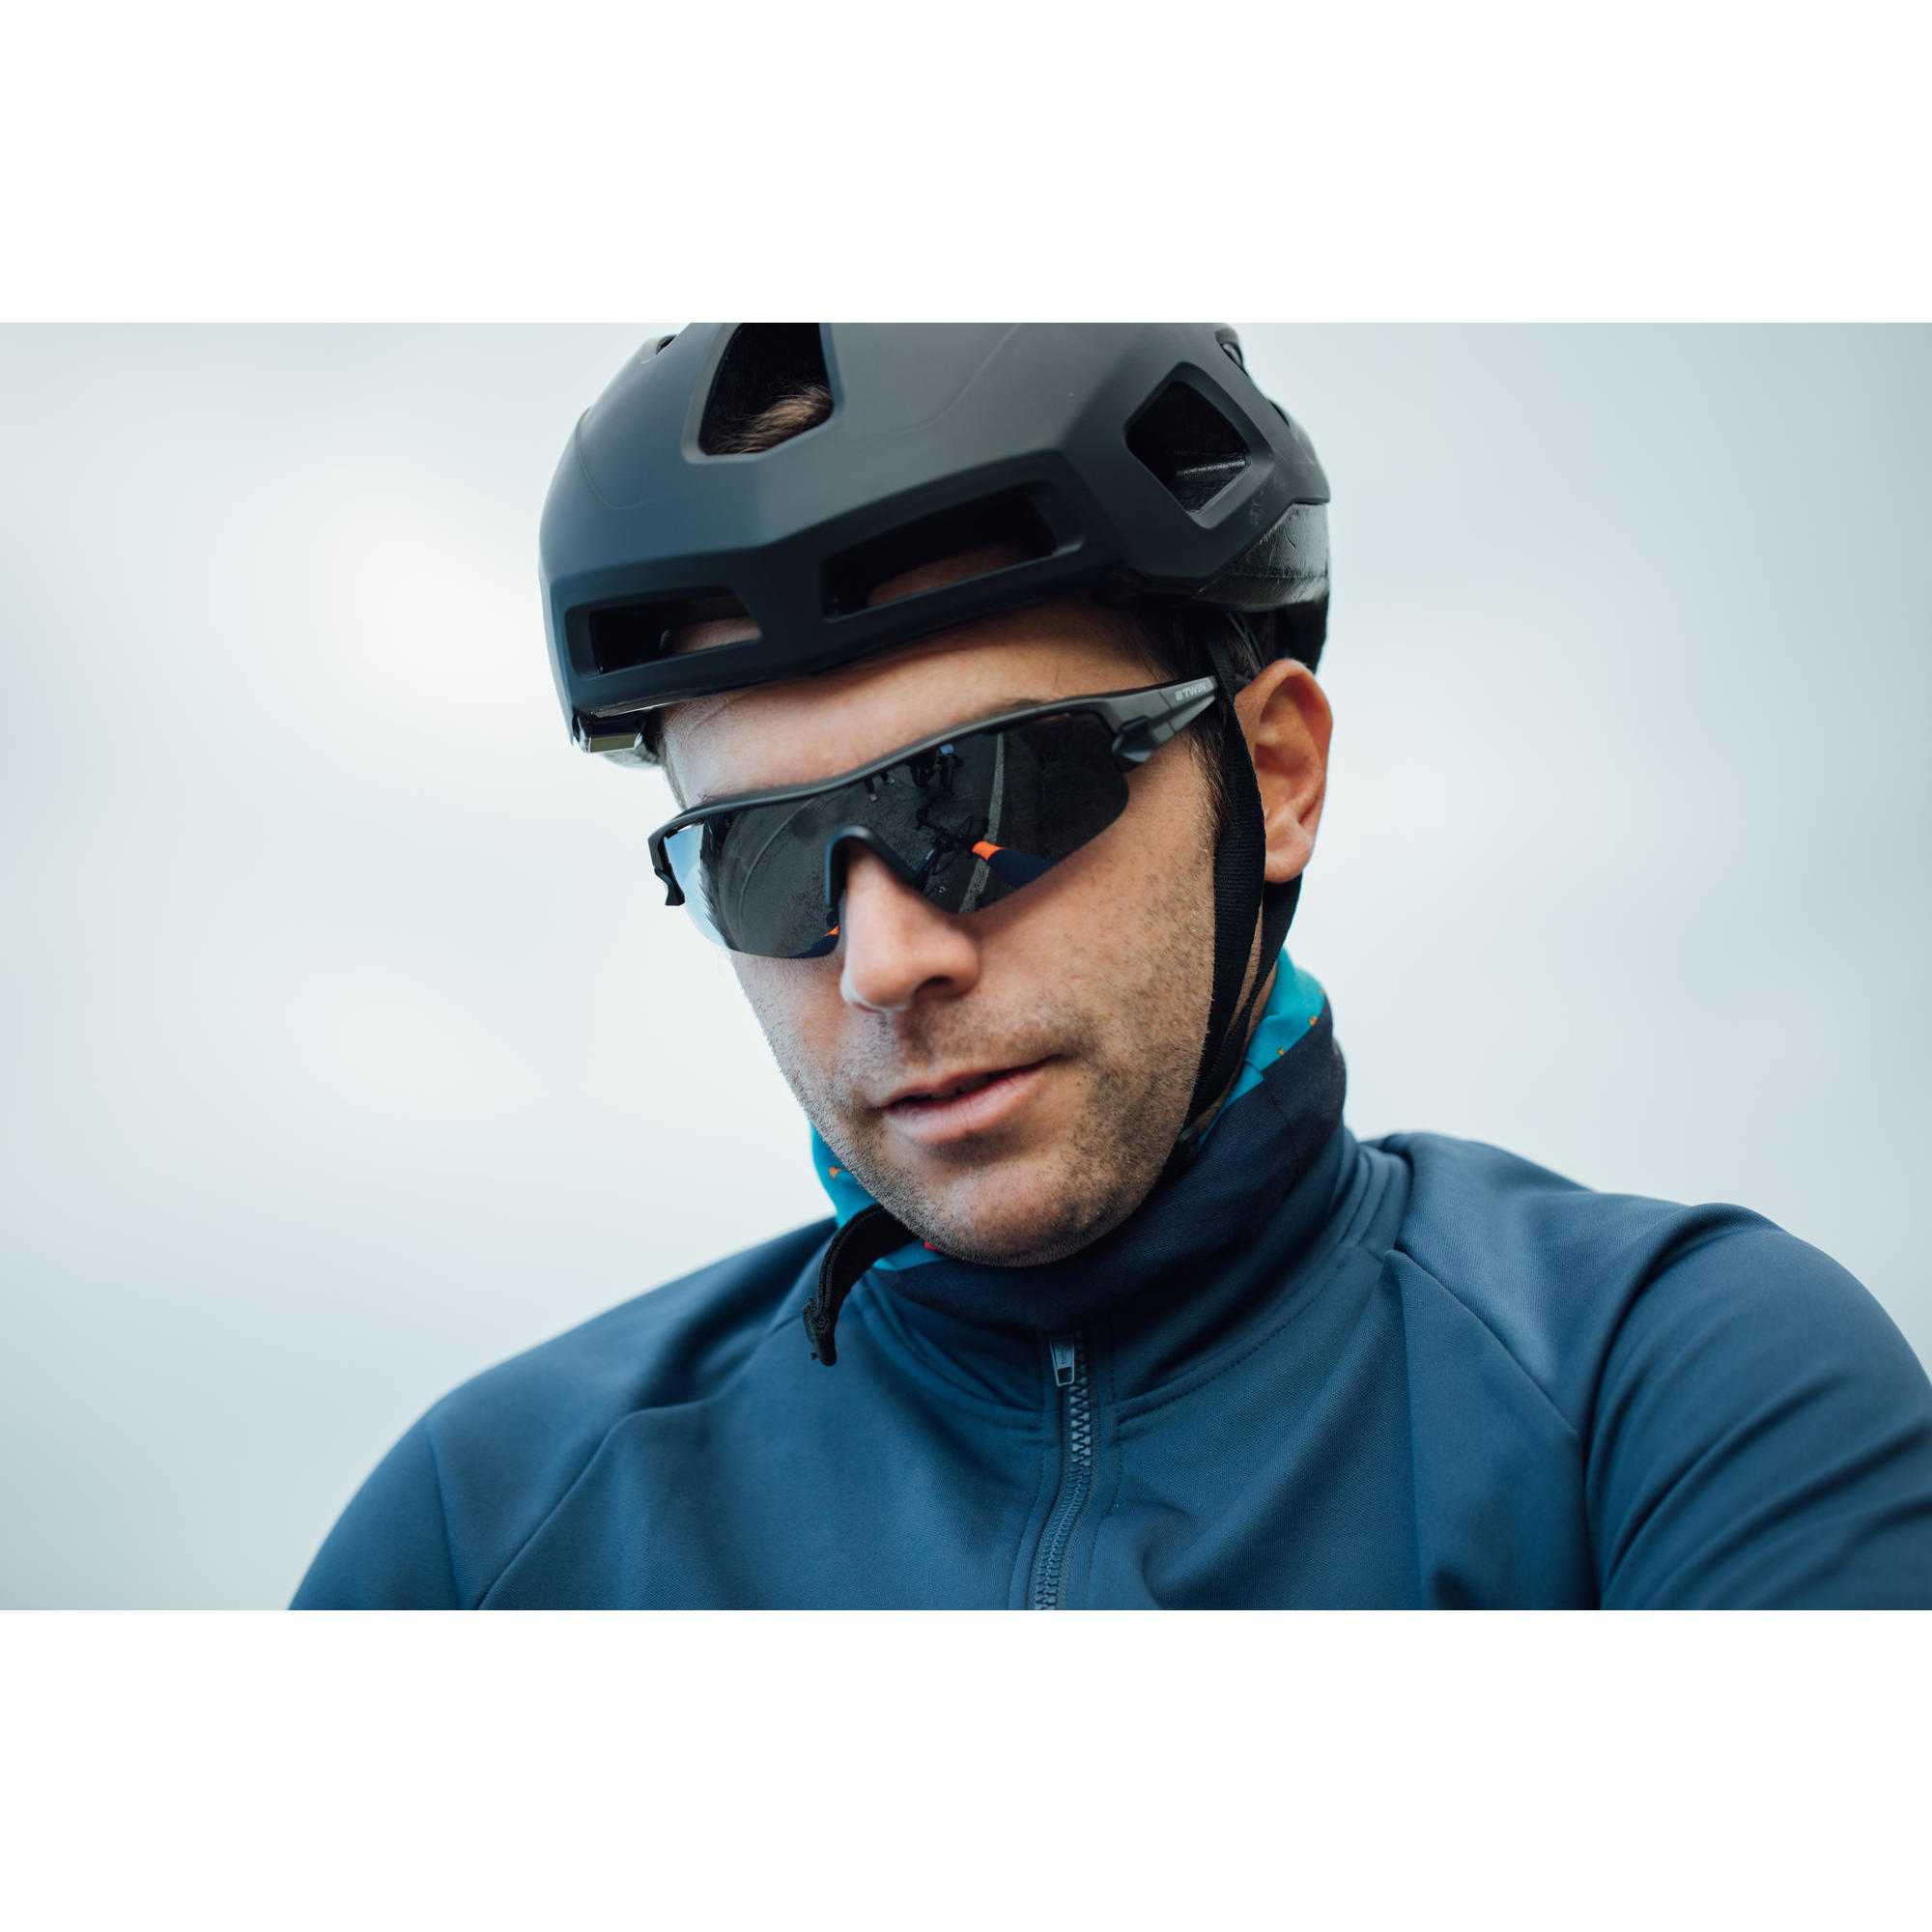 RoadR 100 Cycling Helmet - Black VAN 